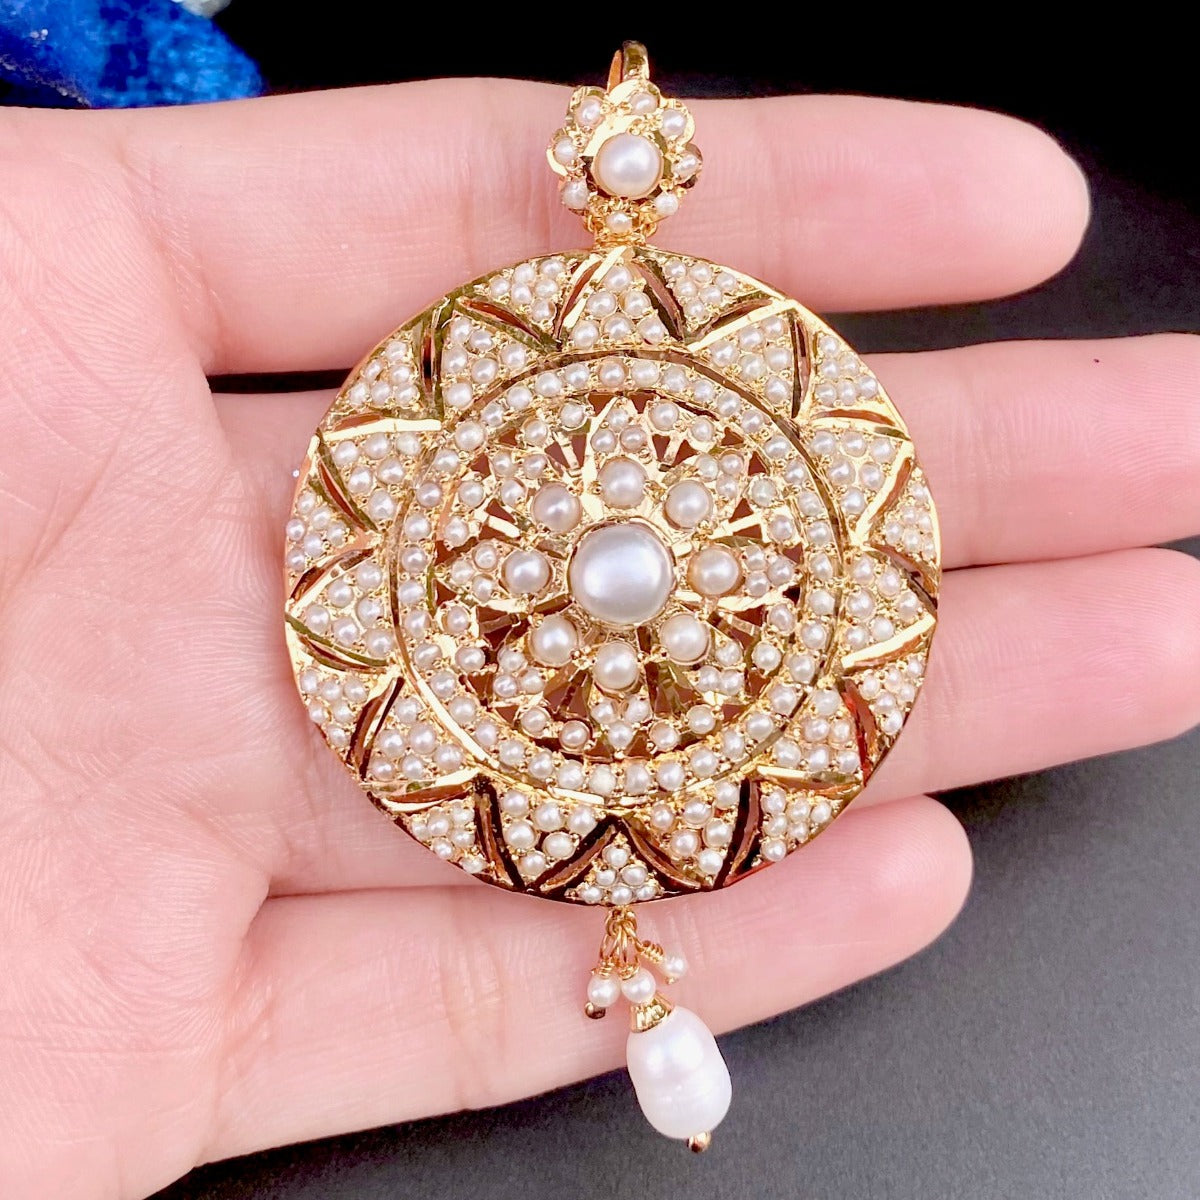 jadau pendant studded with pearls